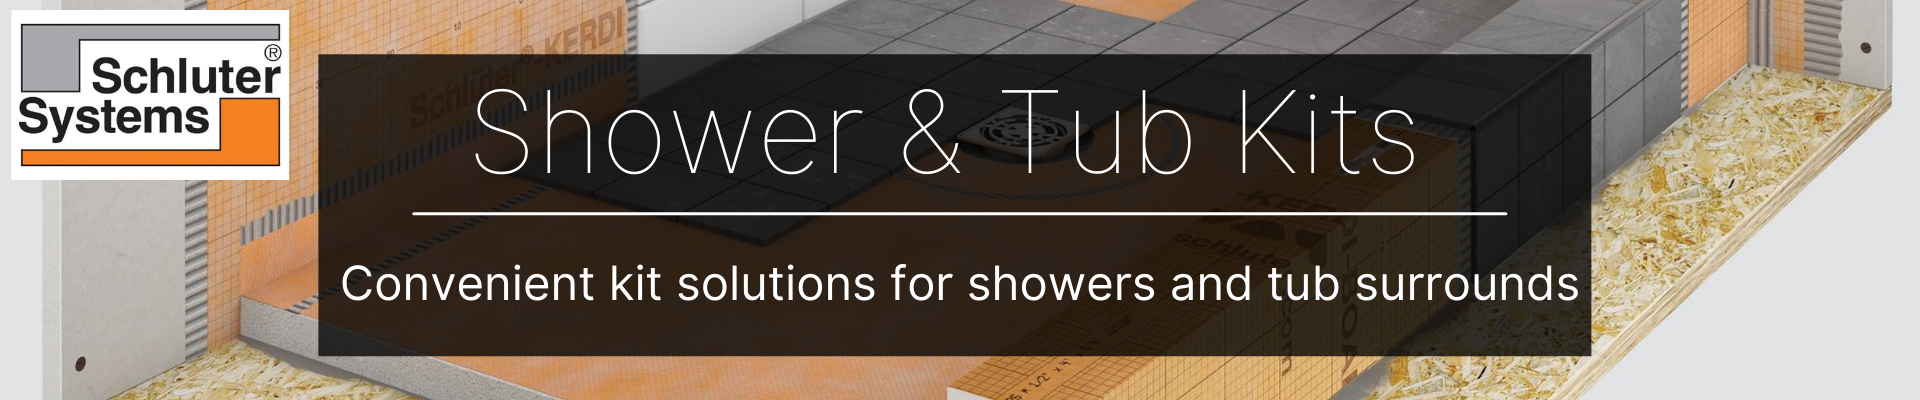 SCHLUTER Shower & Tub Kits